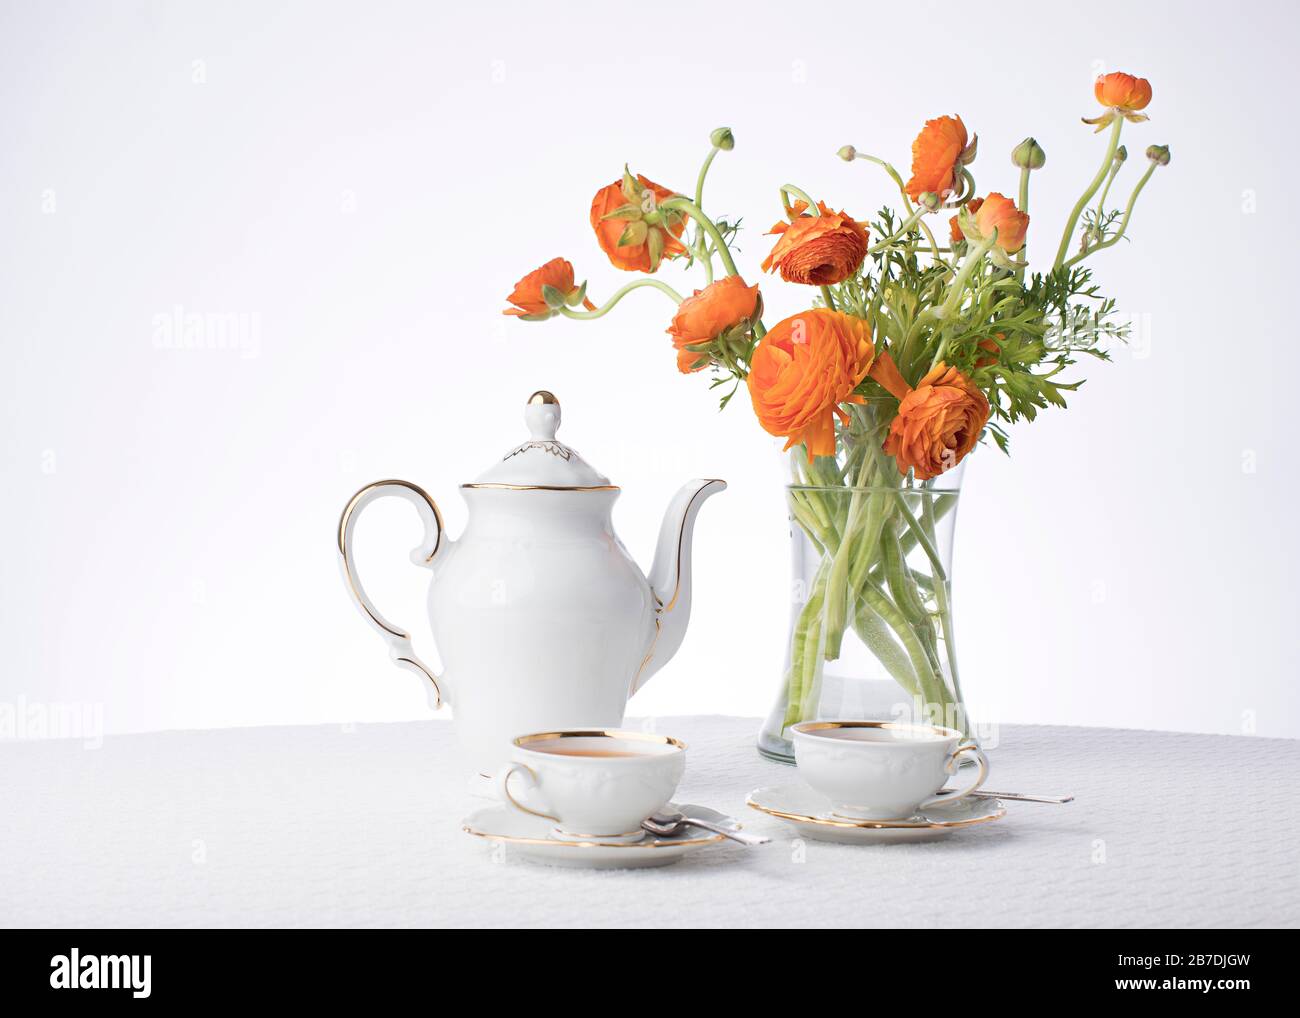 Bianchi puliti e croccanti con finiture in oro metallizzato che mostrano il tè per due con fiori d'arancio freschi in un vaso alto e trasparente su uno sfondo bianco dello studio Foto Stock